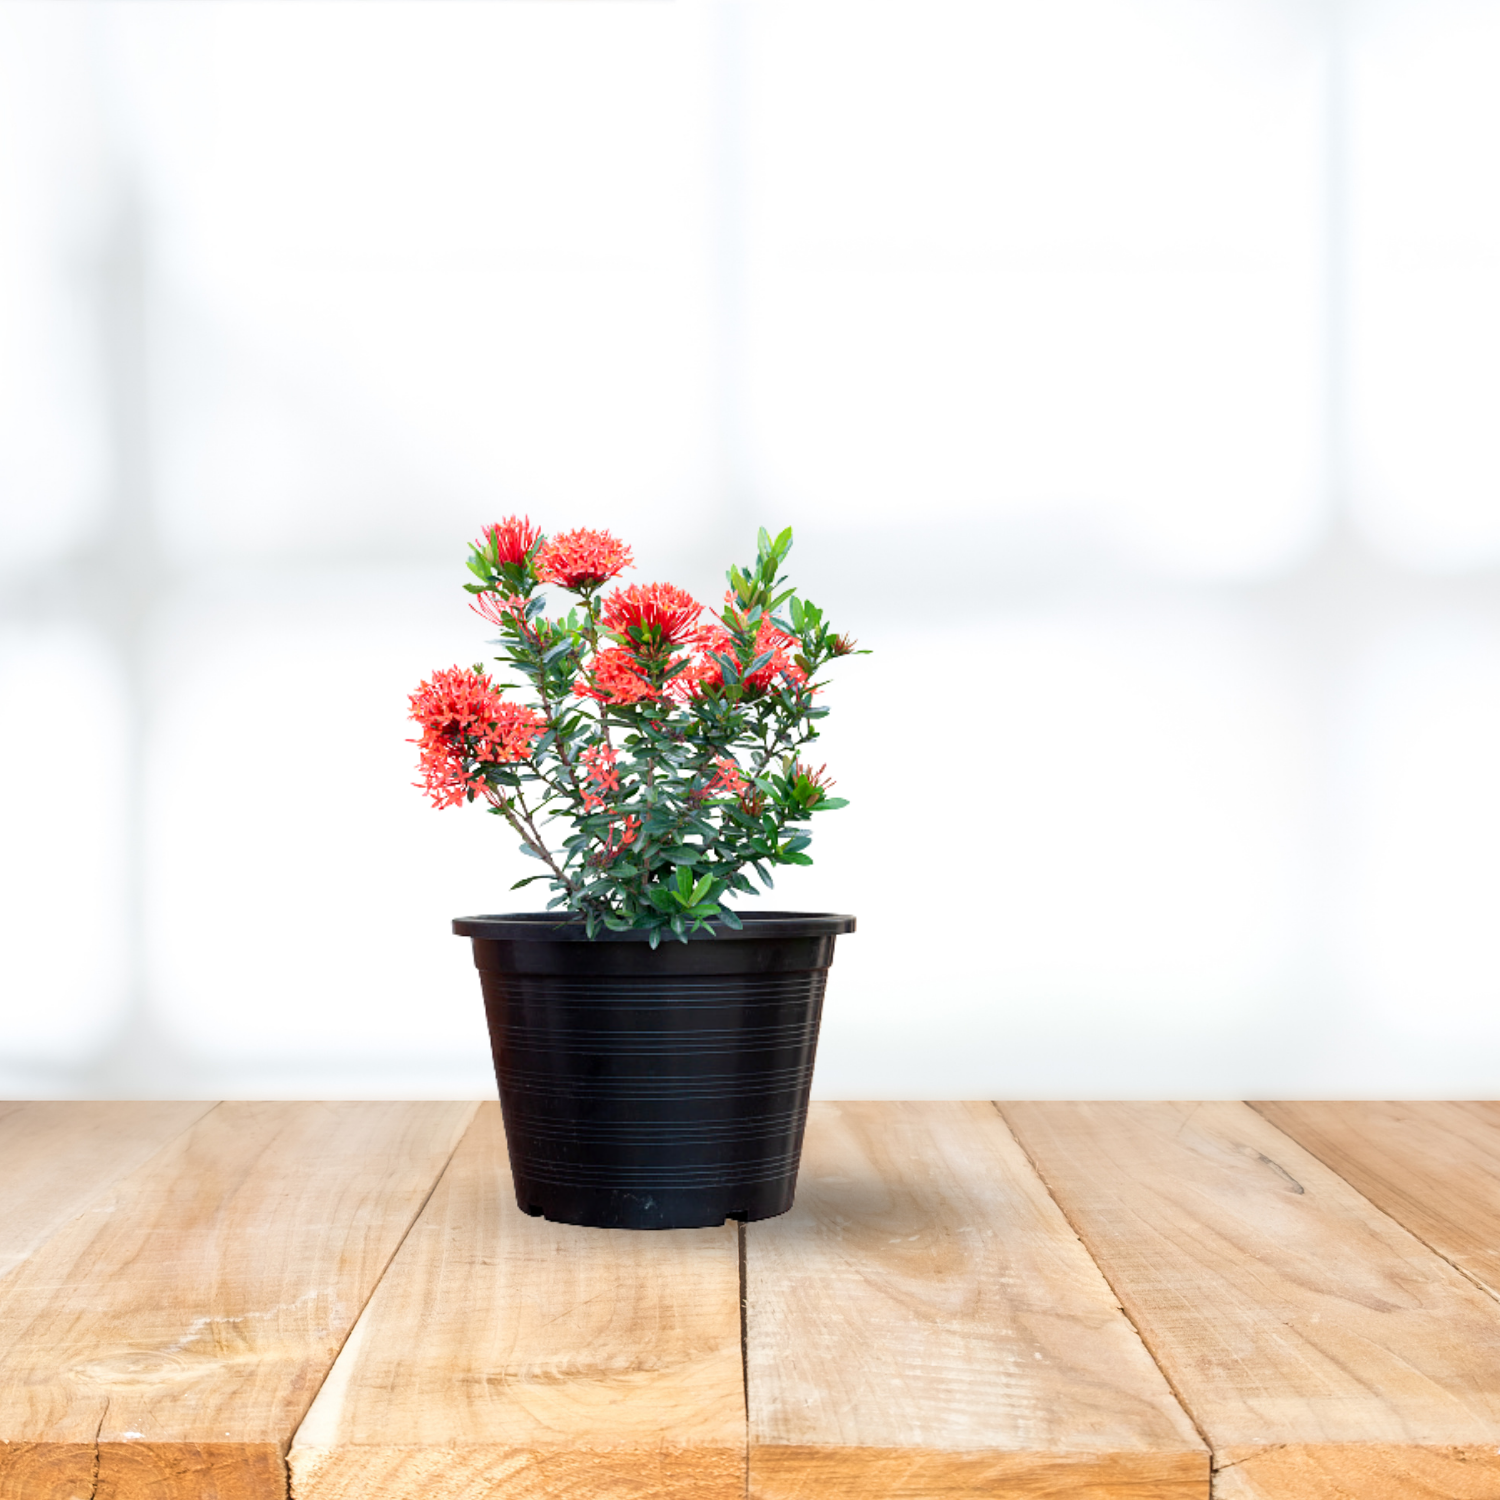 Ixora Red Plant | Flowering home decor plant - Gardengram